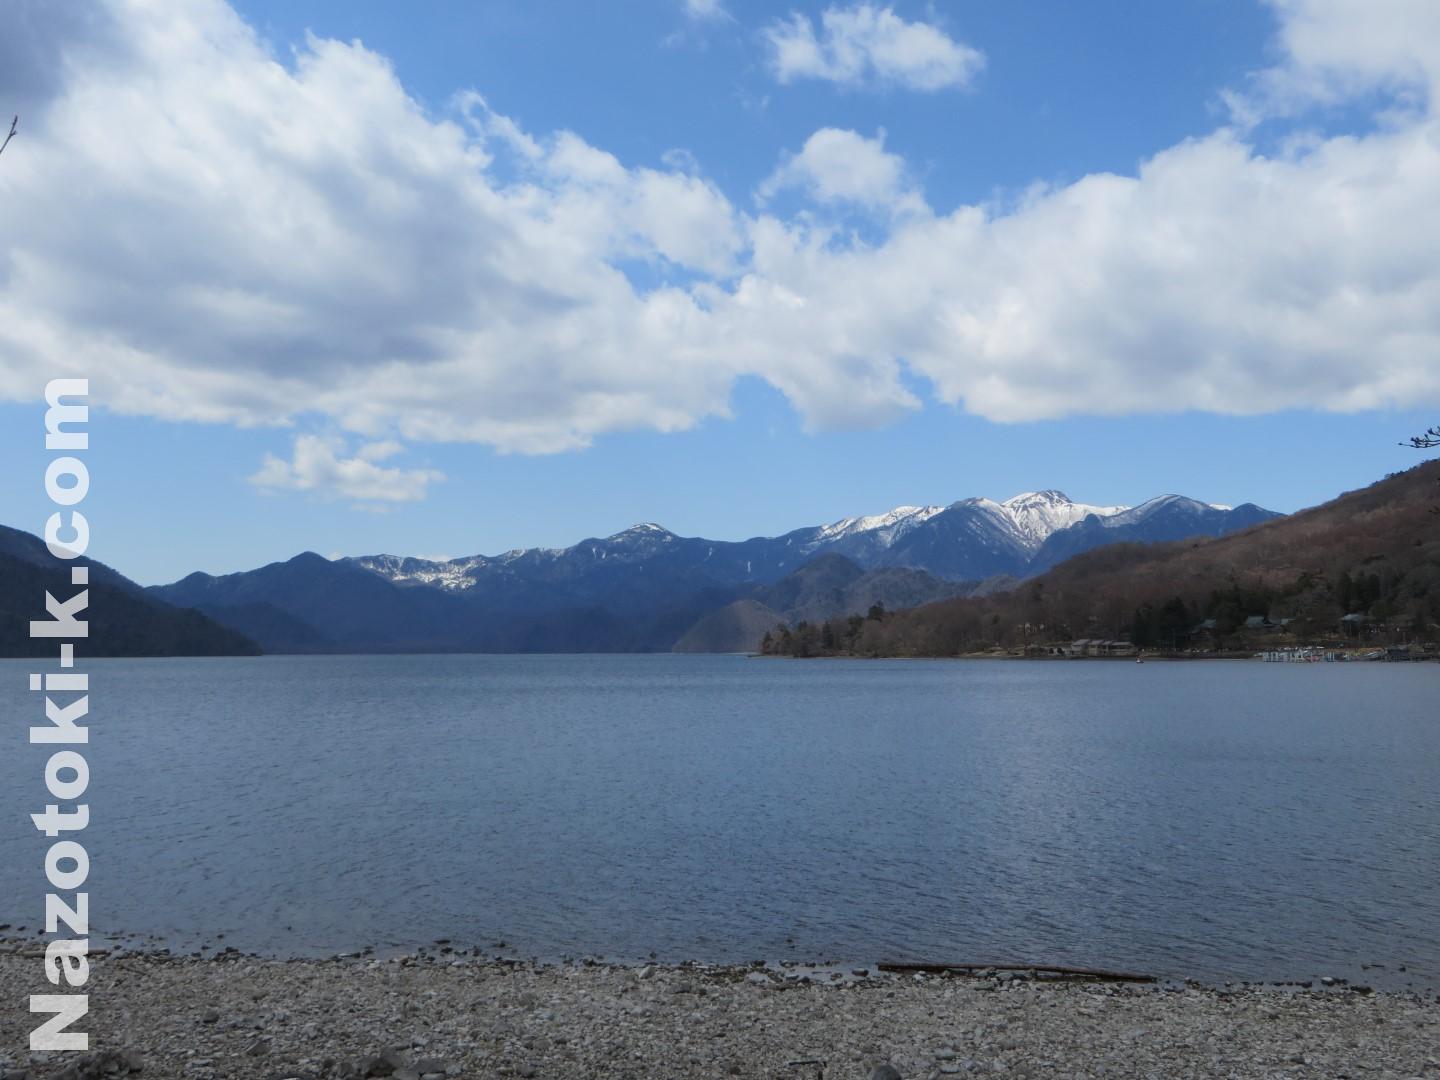 2021/04/13 中禅寺湖の遊覧船と湯滝